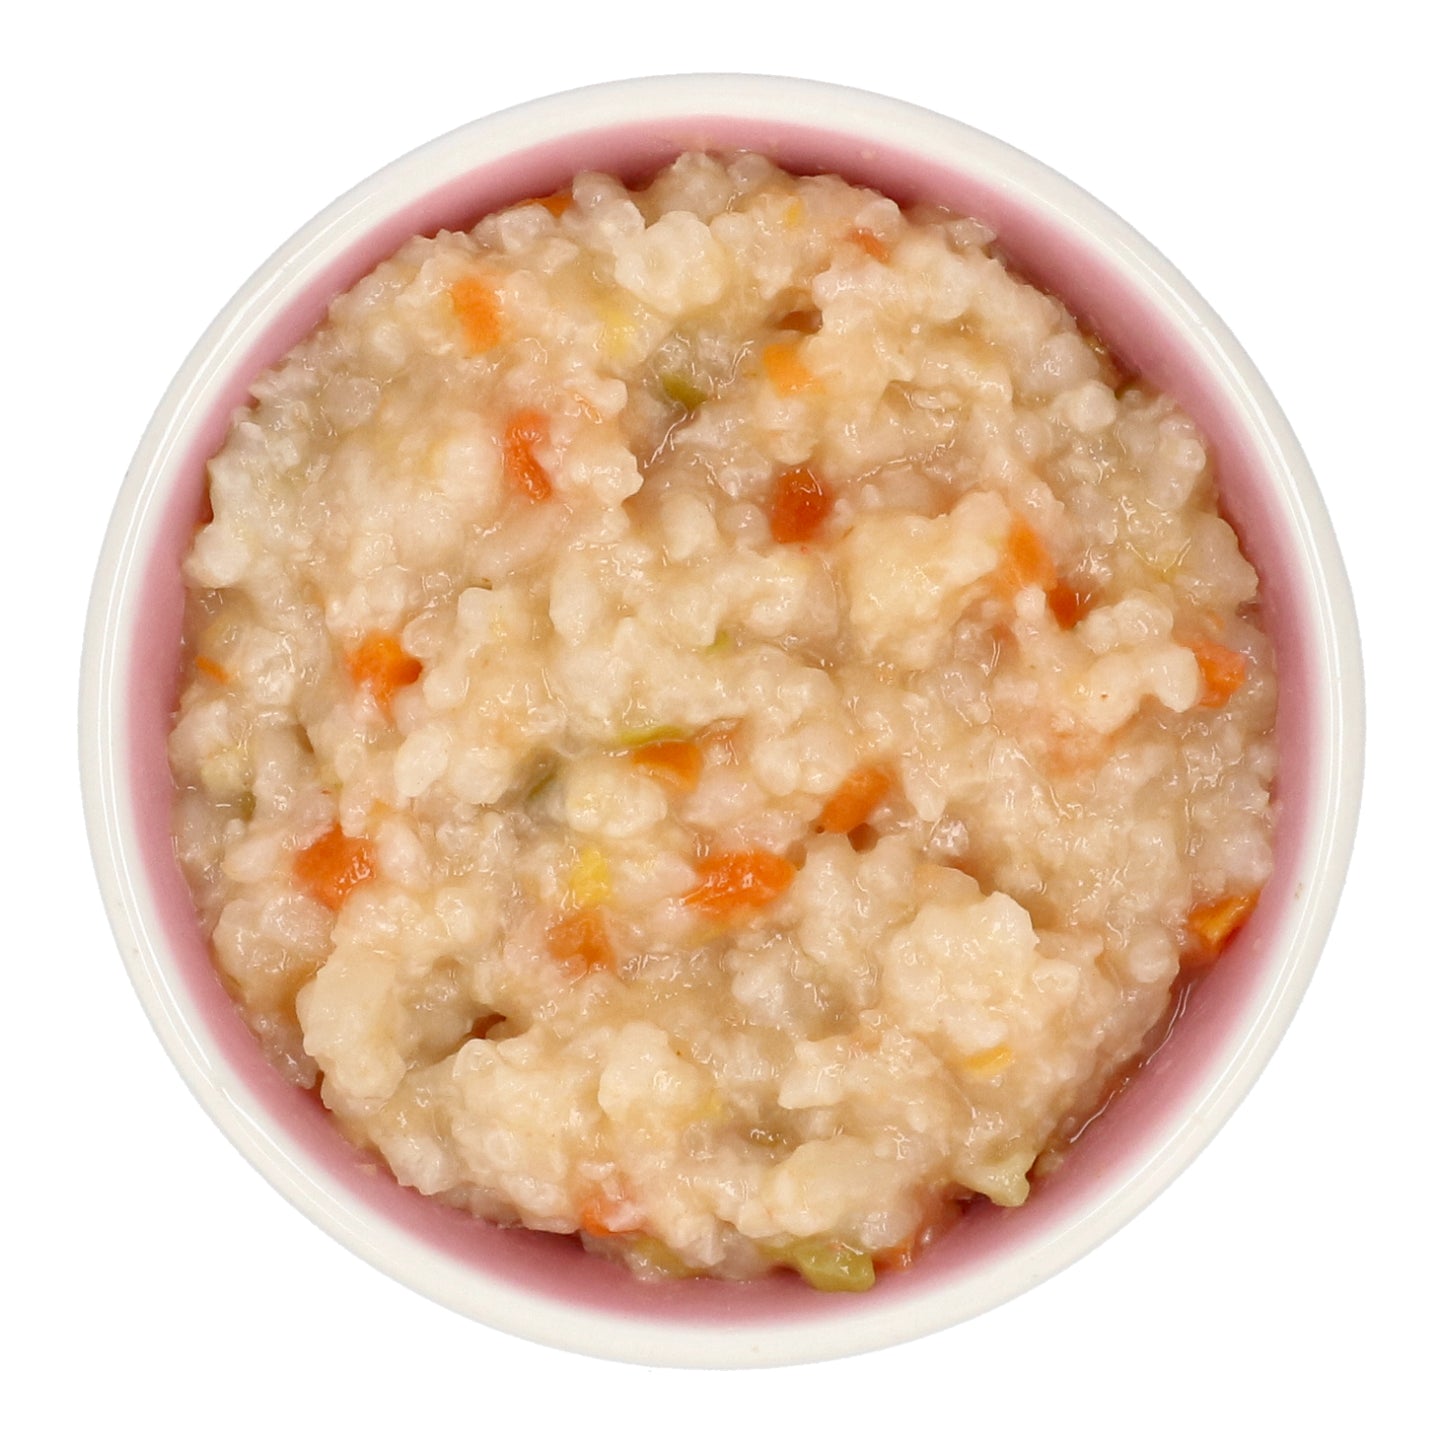 Eusik  - Baby Rice Porridge (Shrimp & Vegetables) 145g, 10mths+